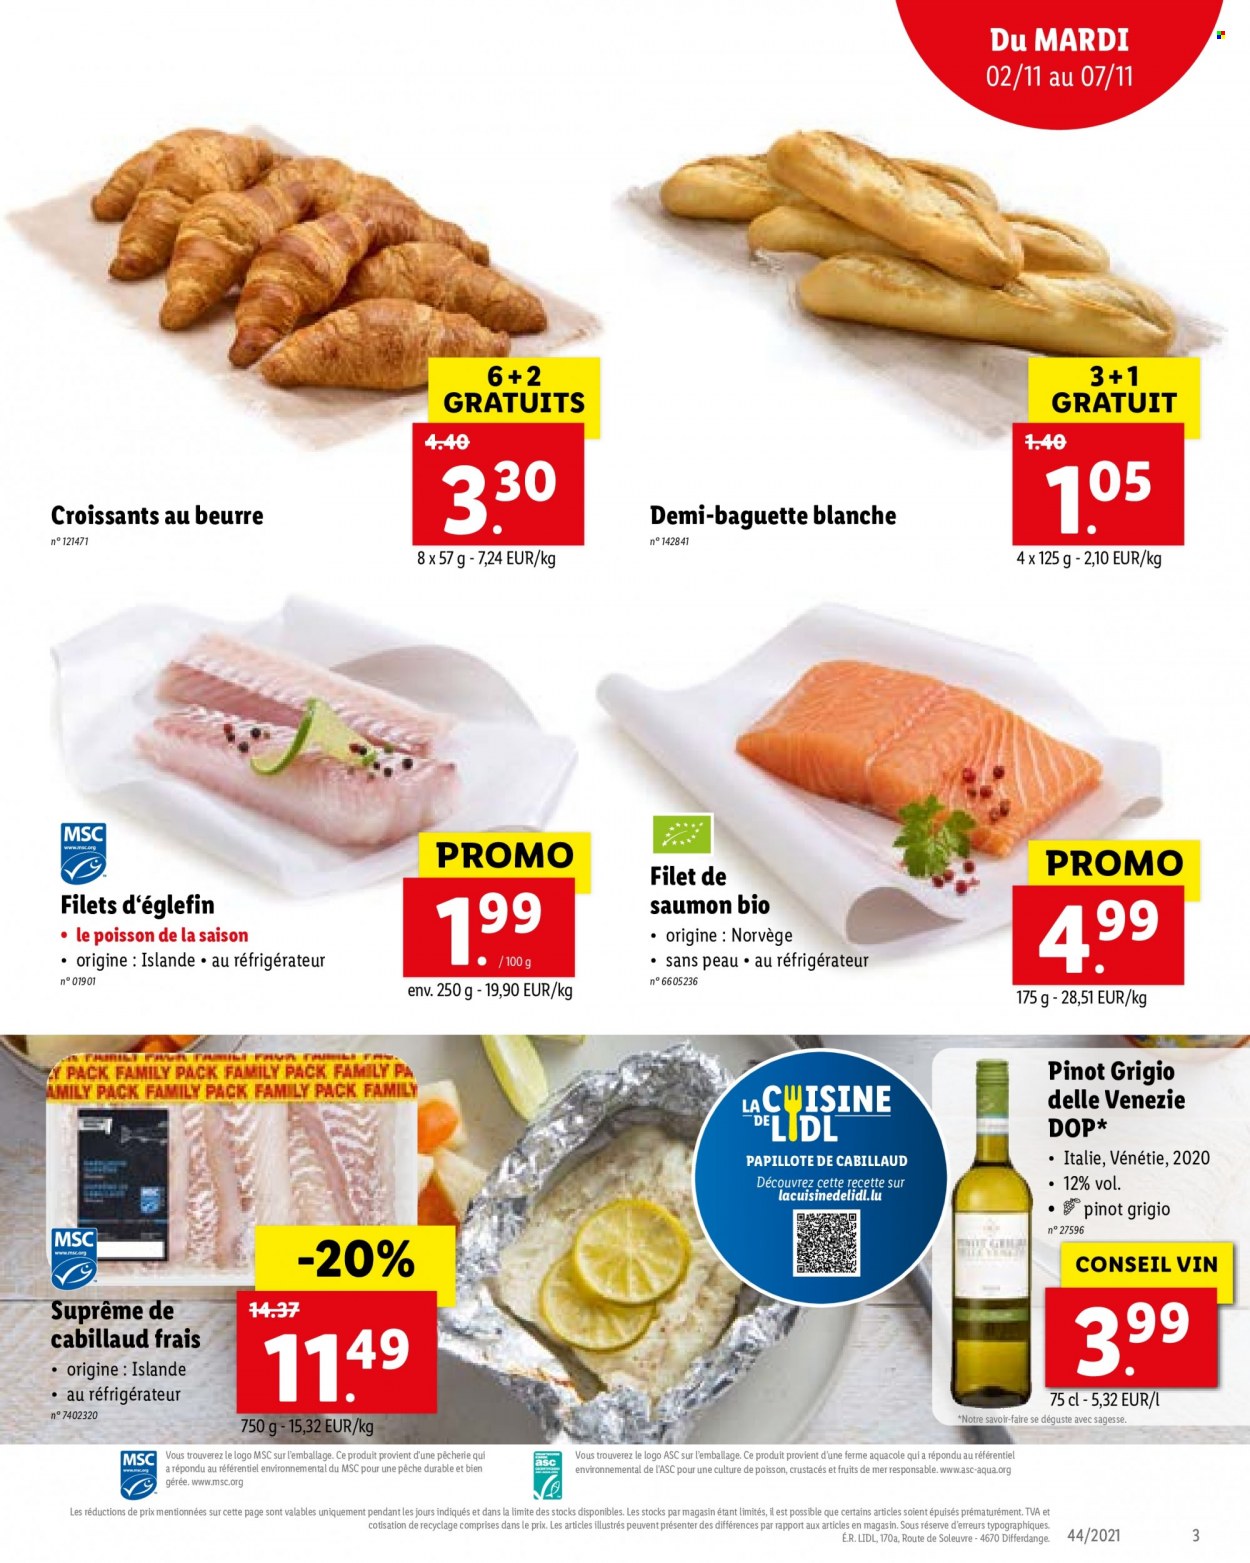 thumbnail - Catalogue Lidl - 02/11/2021 - 07/11/2021 - Produits soldés - croissant, baguette, pavés de saumon, eglefin, LU, papillotes, vin. Page 3.